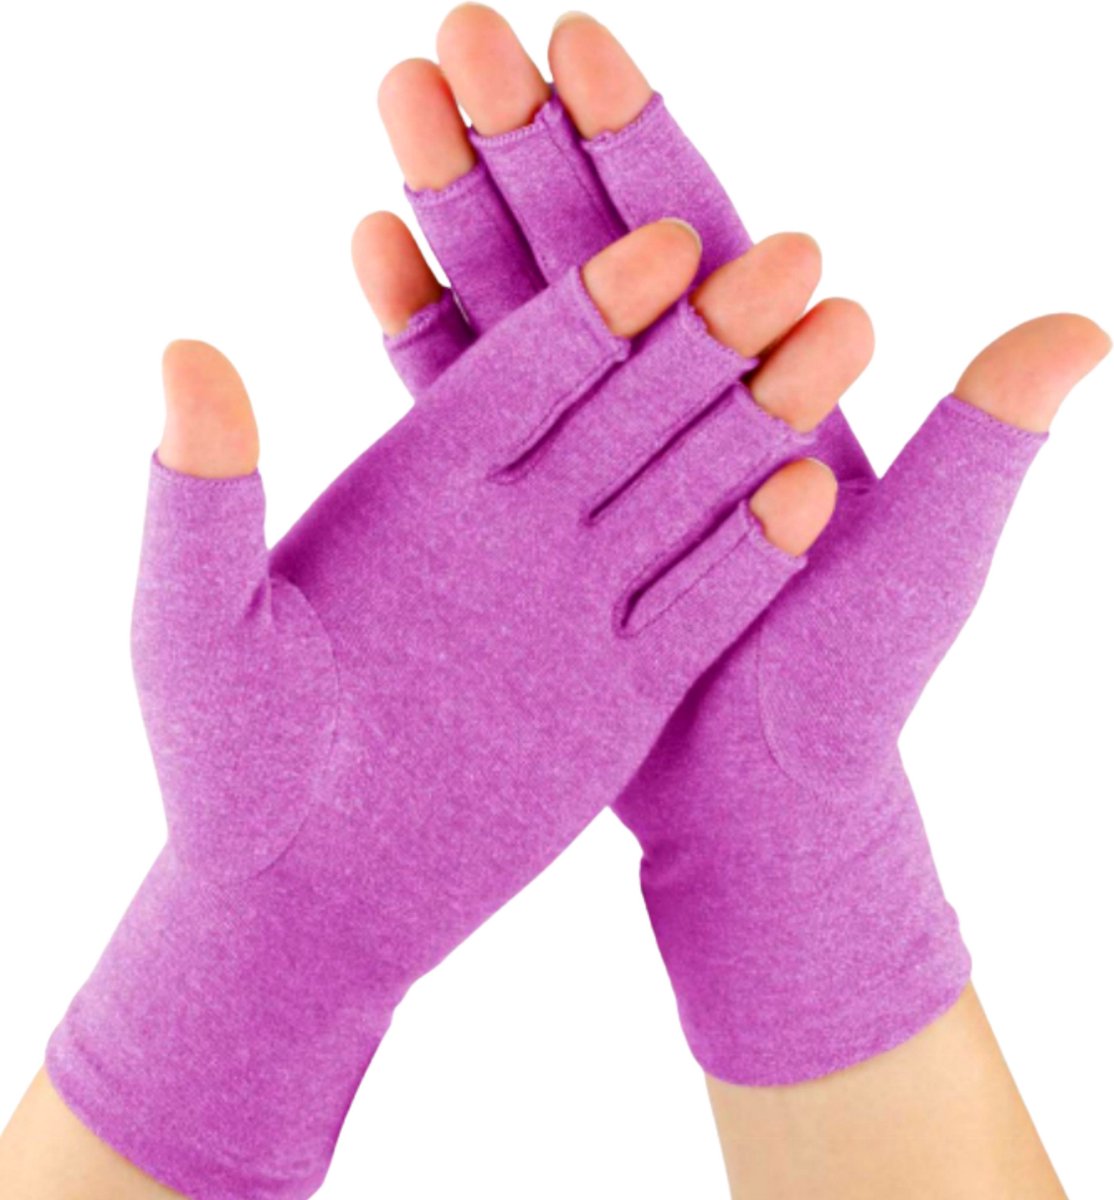 Kangka Artritis Handschoenen met Open Vingertoppen Maat M - Artrose Handschoen - Paars